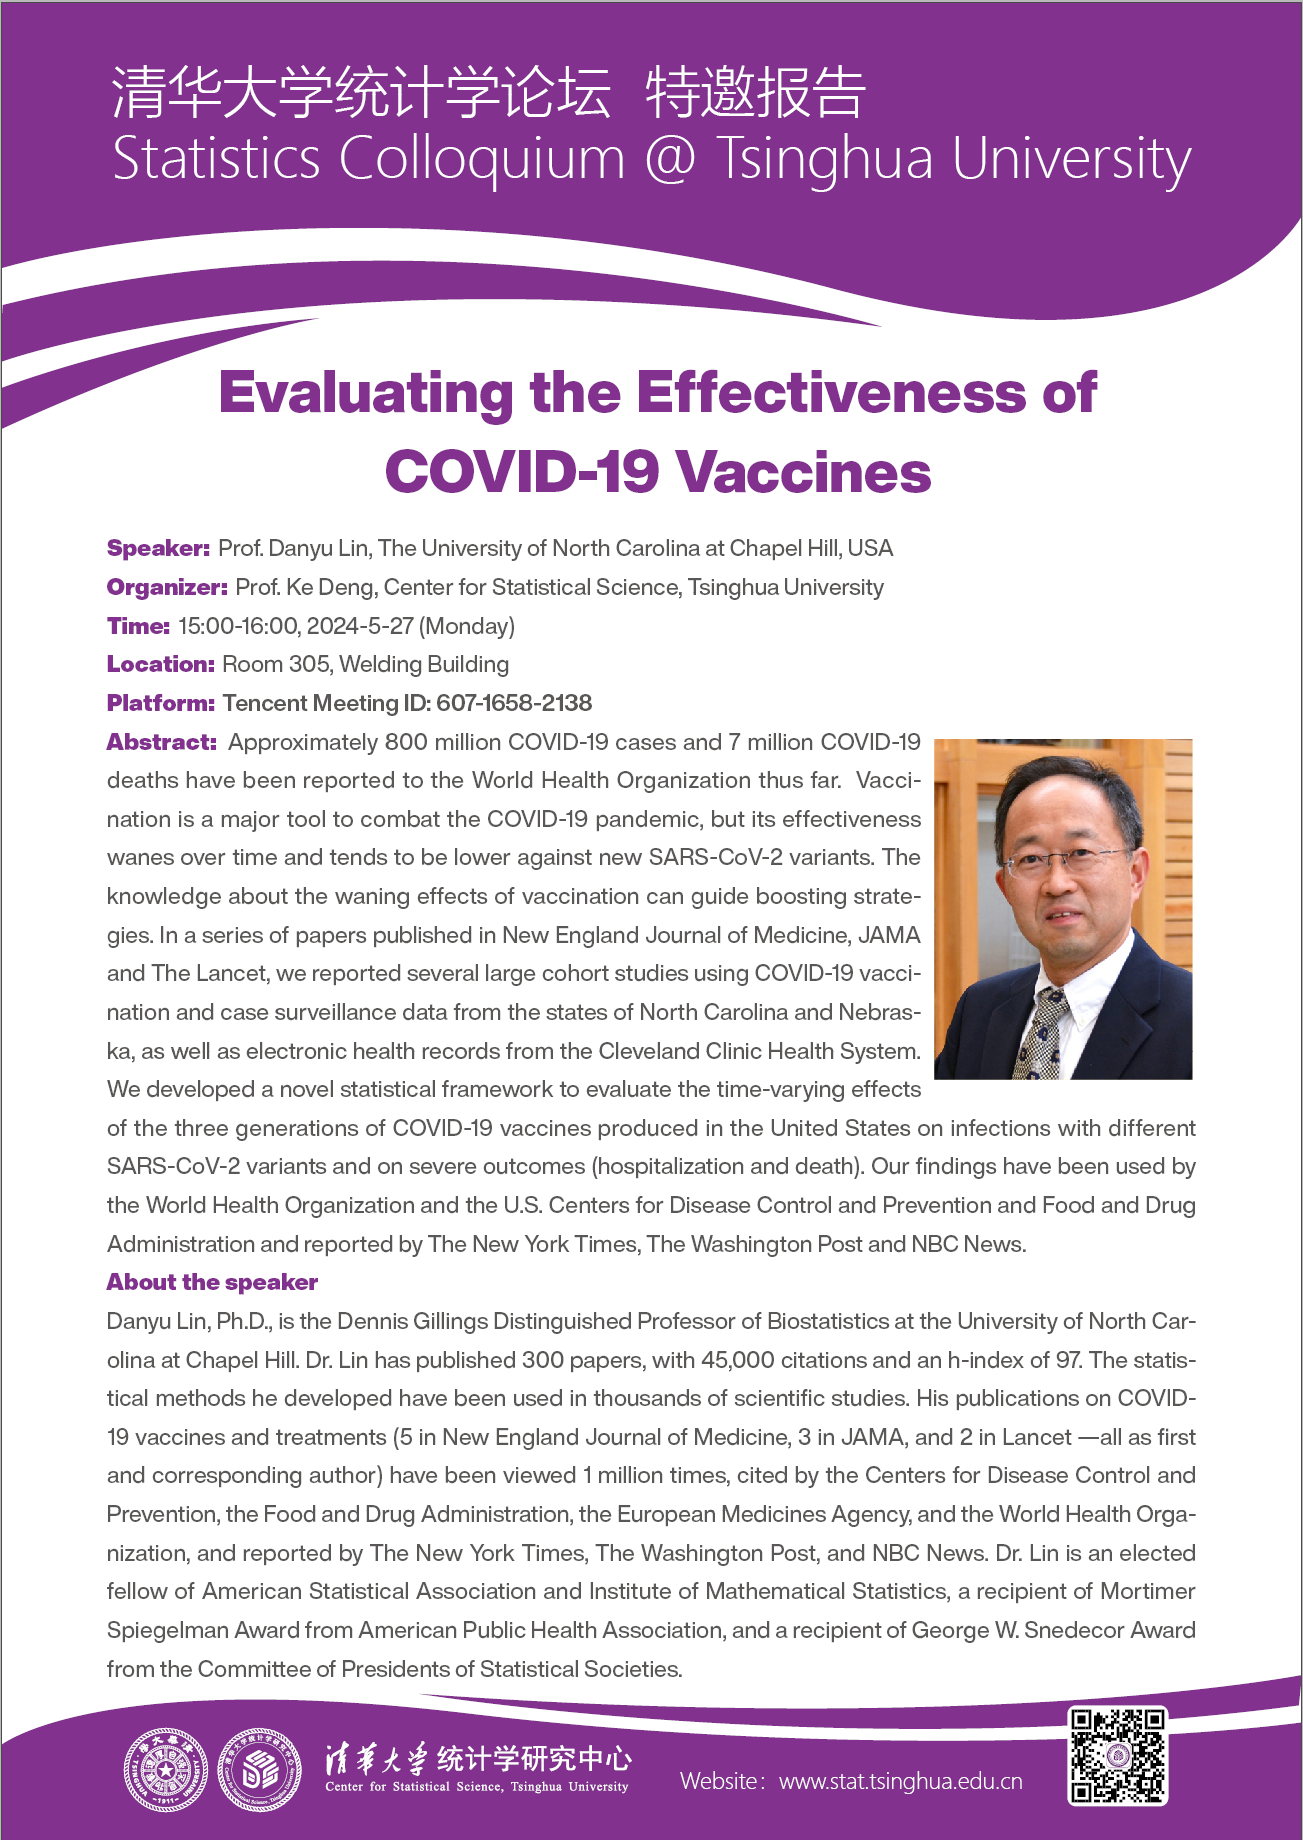 【统计学论坛】Evaluating the Effectiveness of COVID-19 Vaccines